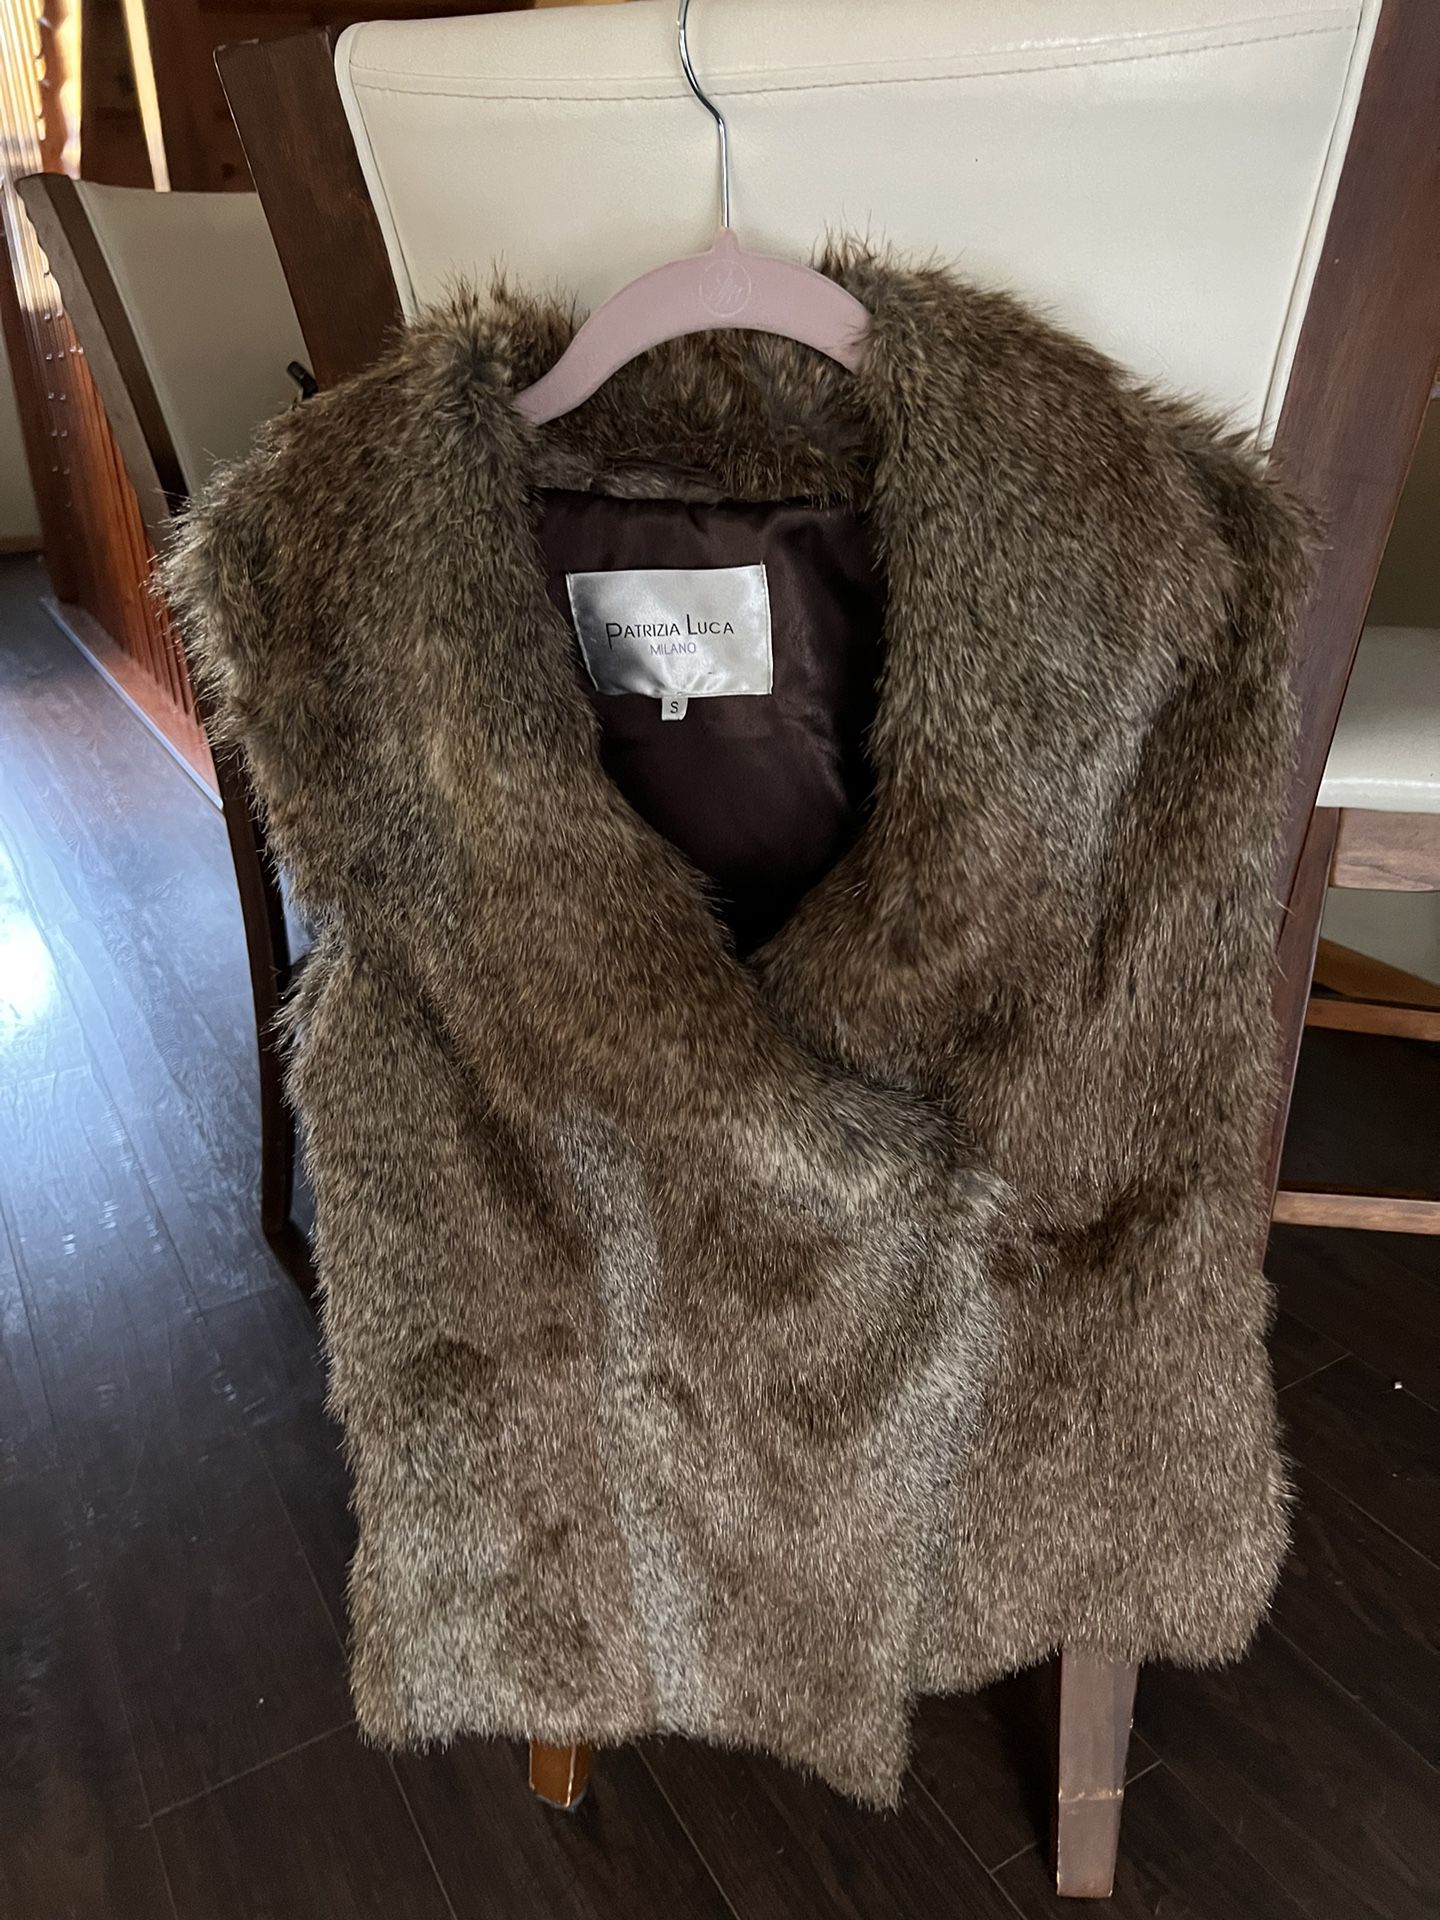 Faux Fur Vest - Mint Condition - Size S - Non-smoking House